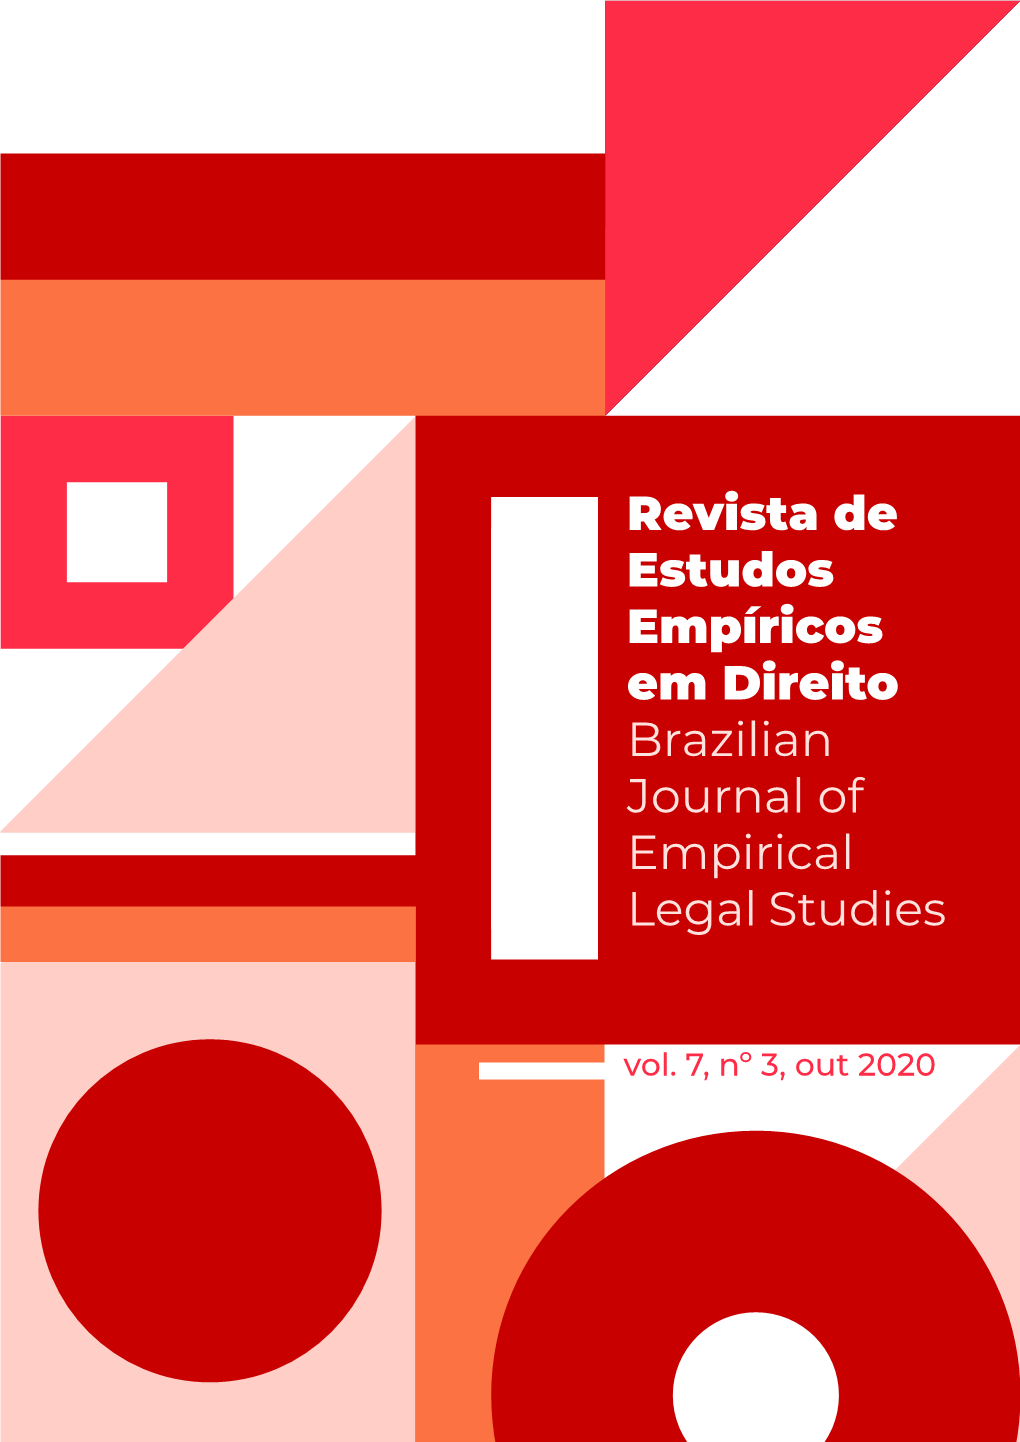 Revista De Estudos Empíricos Em Direito Brazilian Journal of Empirical Legal Studies